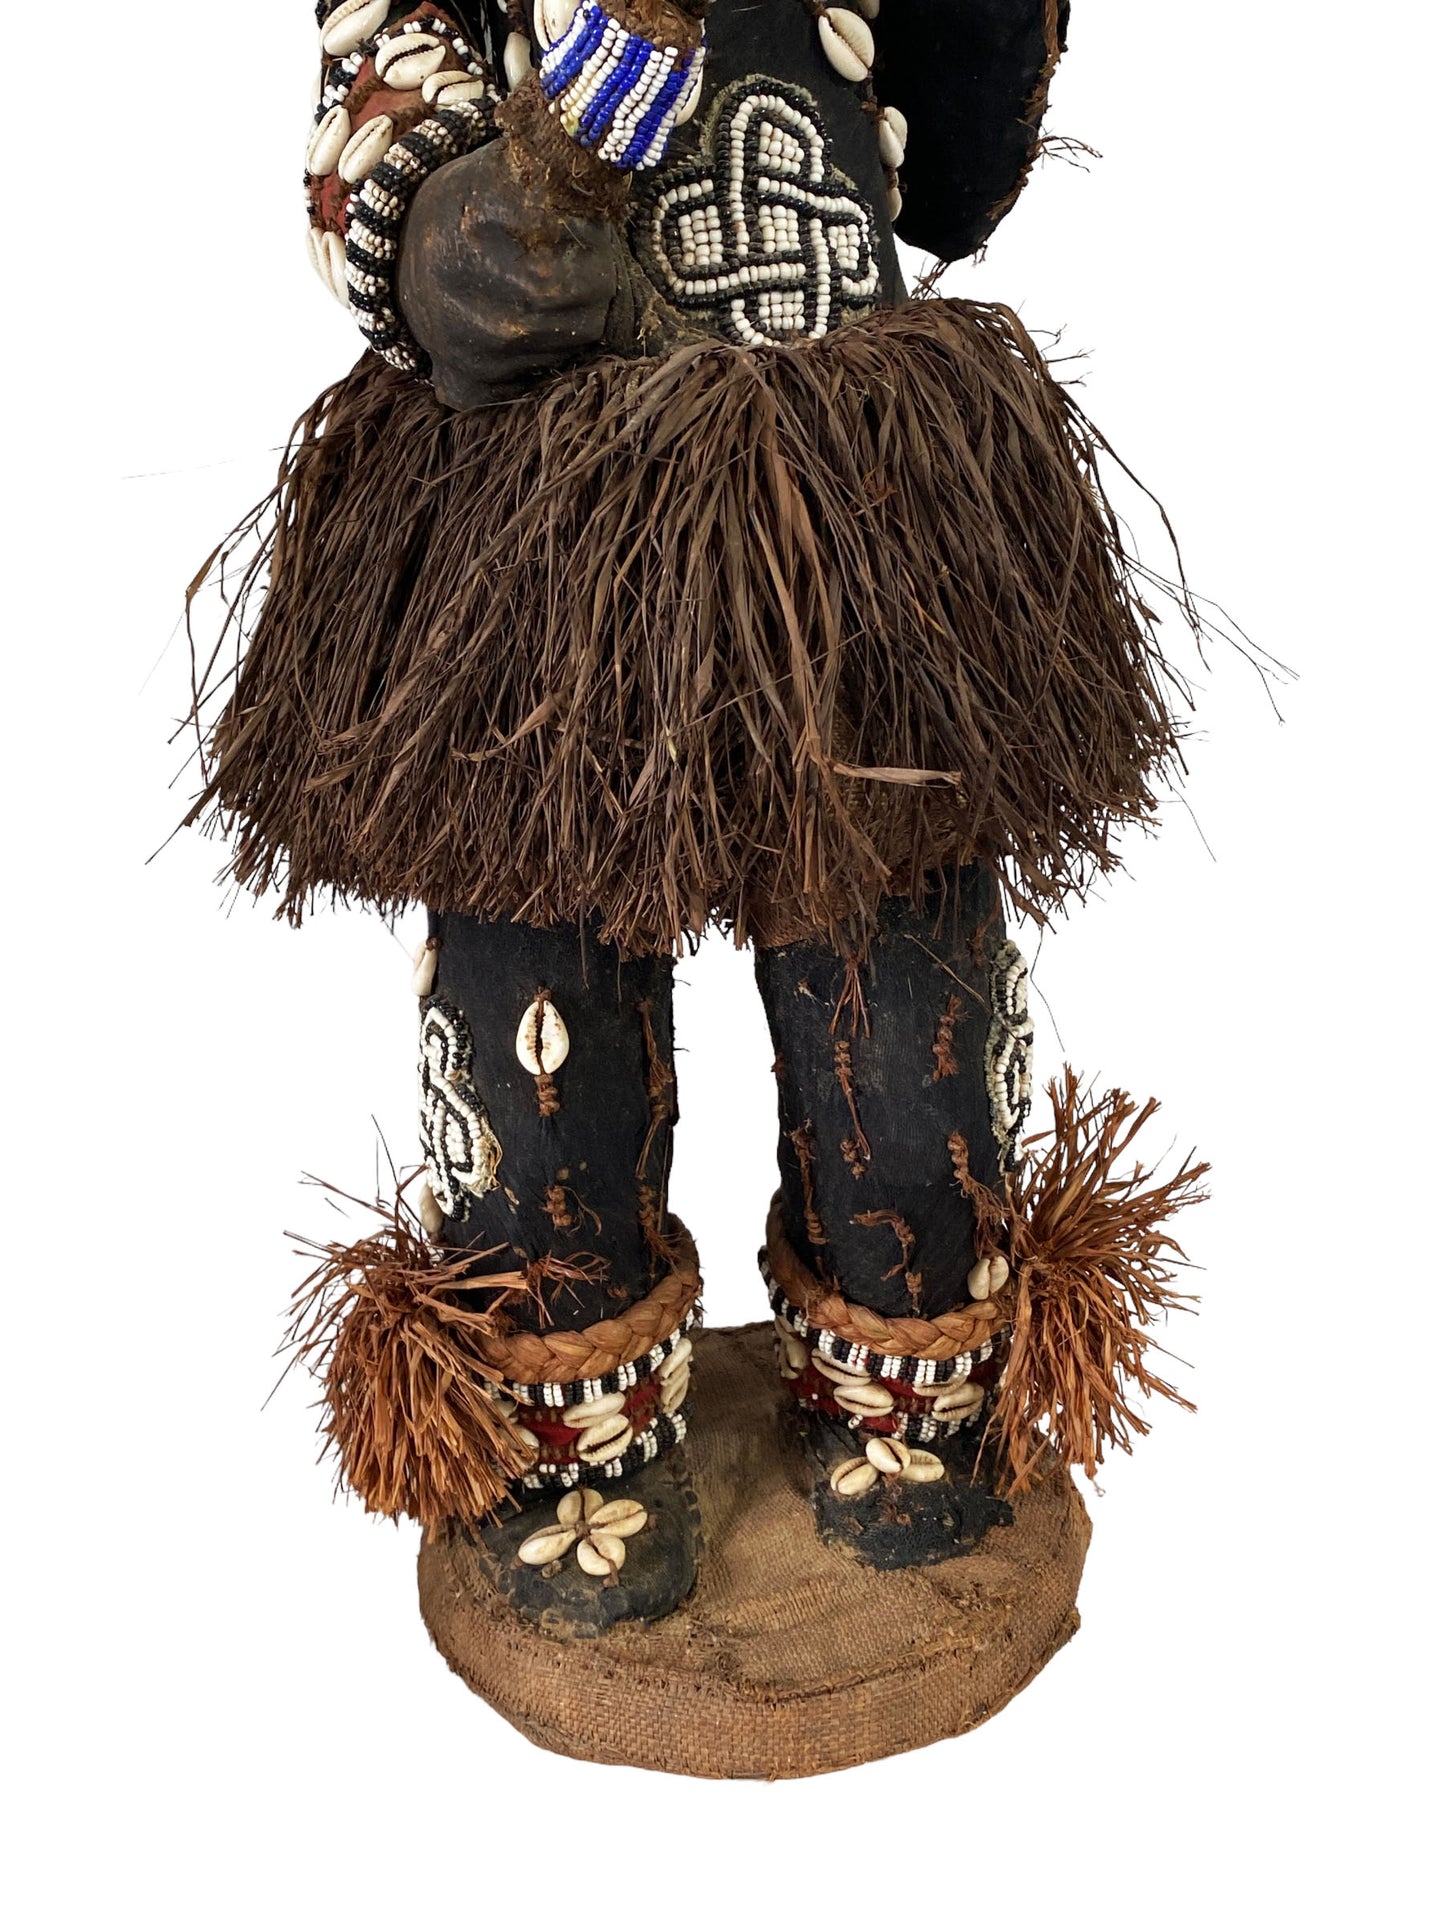 # 5469 Rare Royal Kuba Mukenga Beaded  Bird Dancing sculpture Congo Africa 32" H